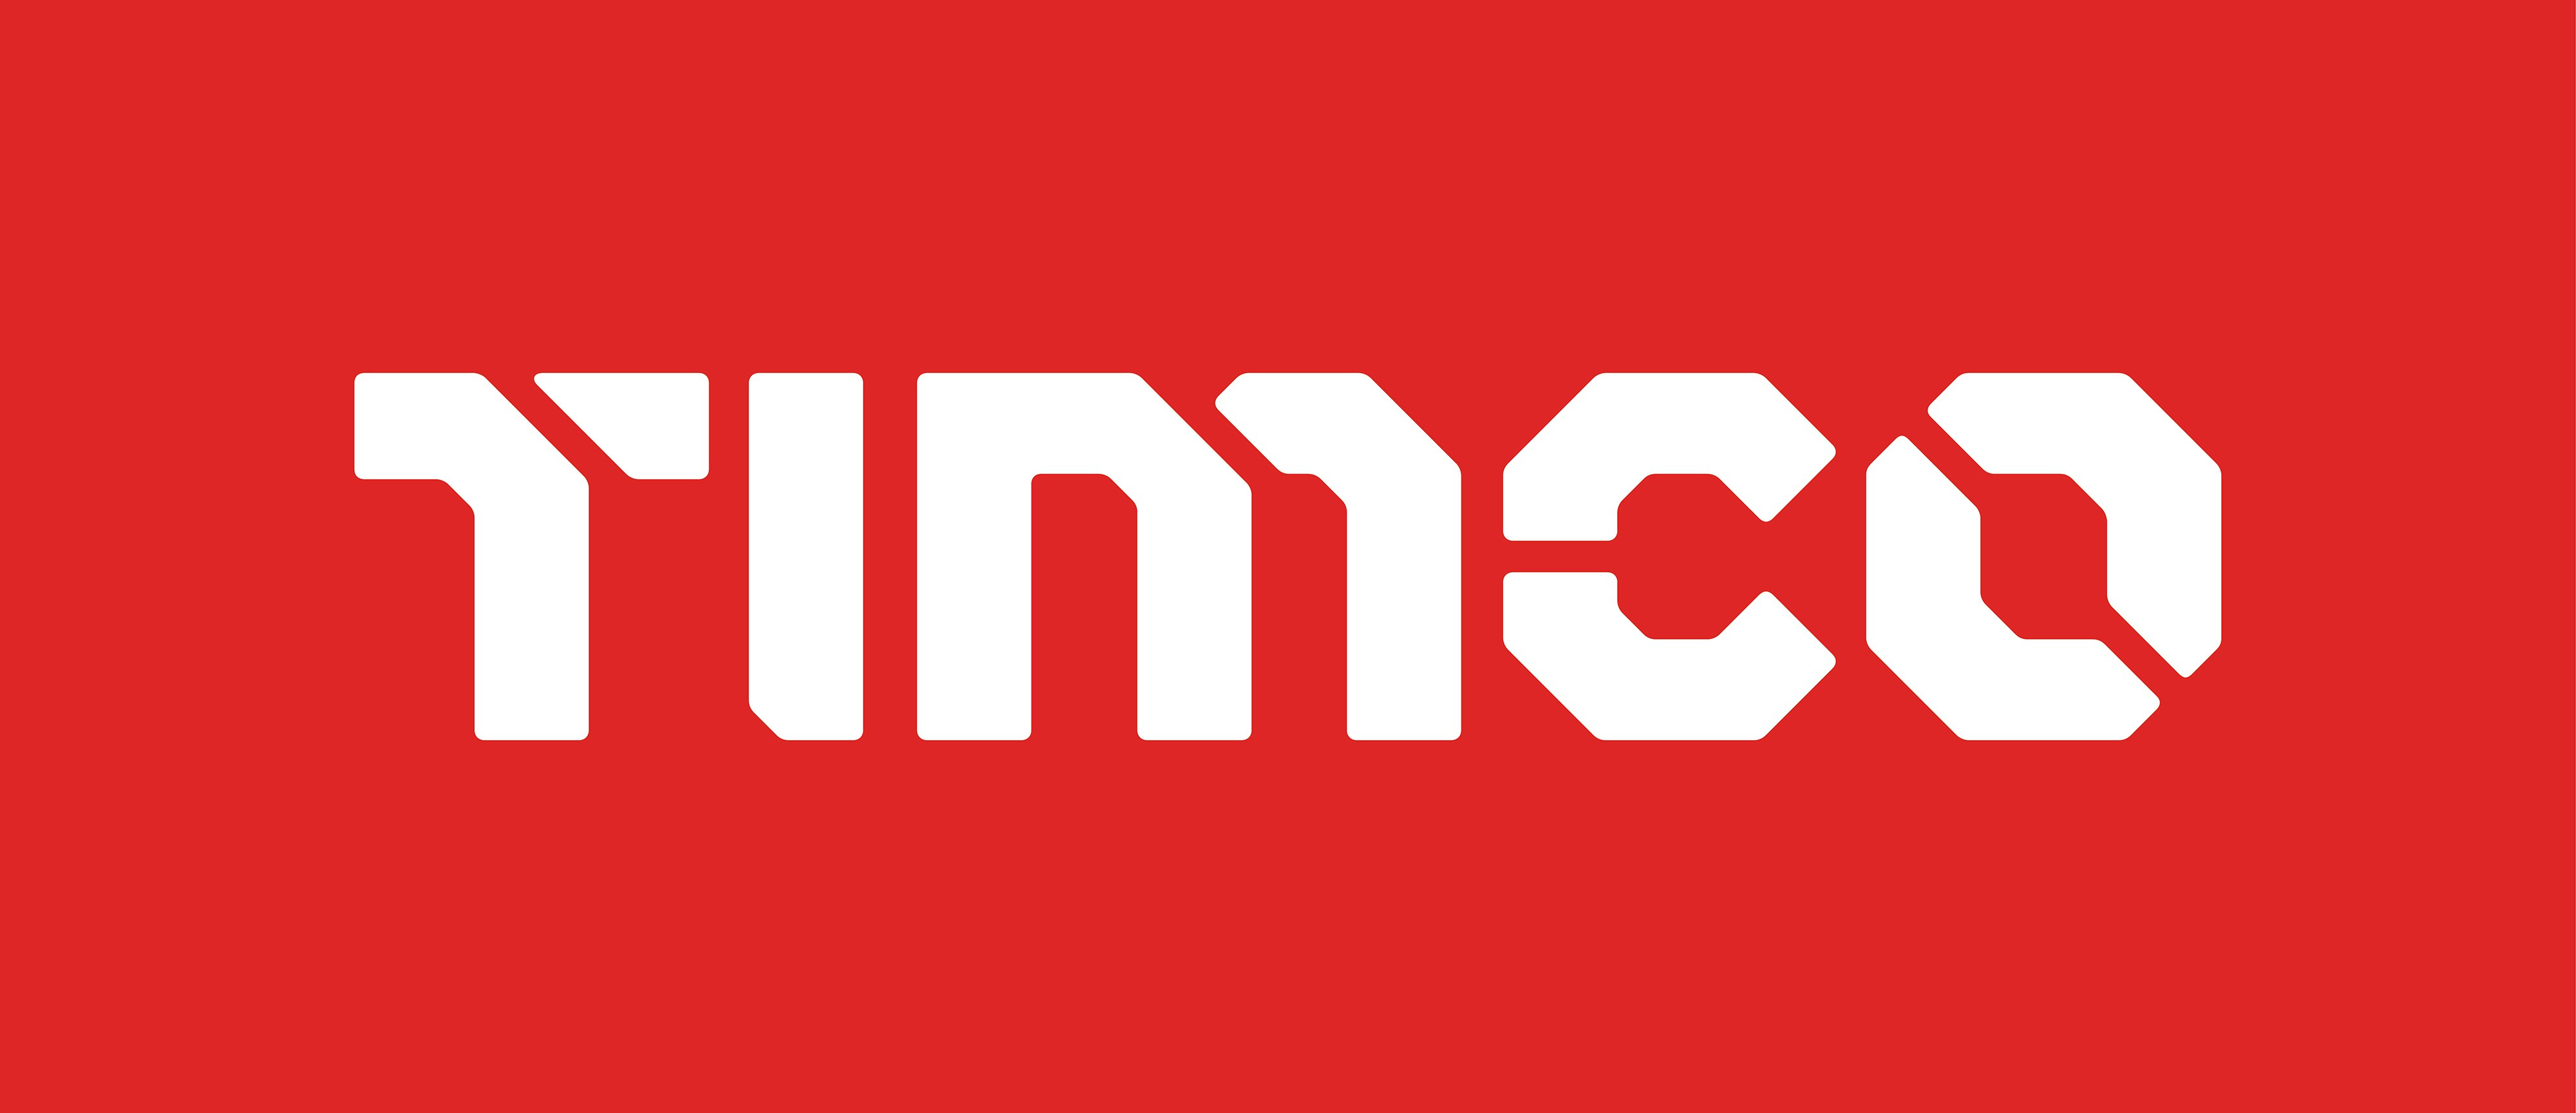 Timco logo